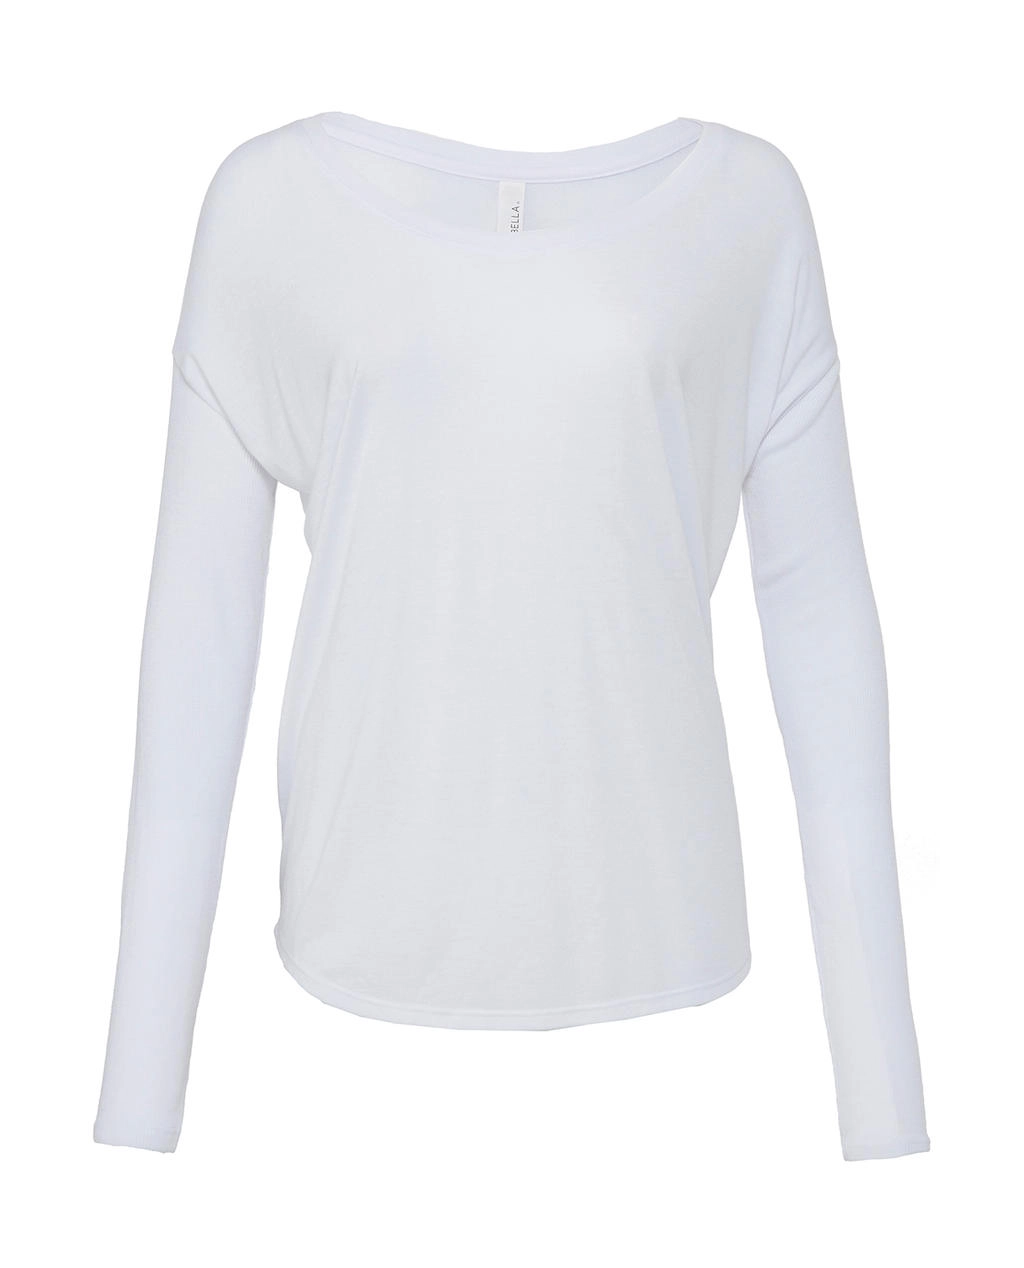 Flowy T-Shirt with 2x1 Sleeves zum Besticken und Bedrucken in der Farbe White mit Ihren Logo, Schriftzug oder Motiv.